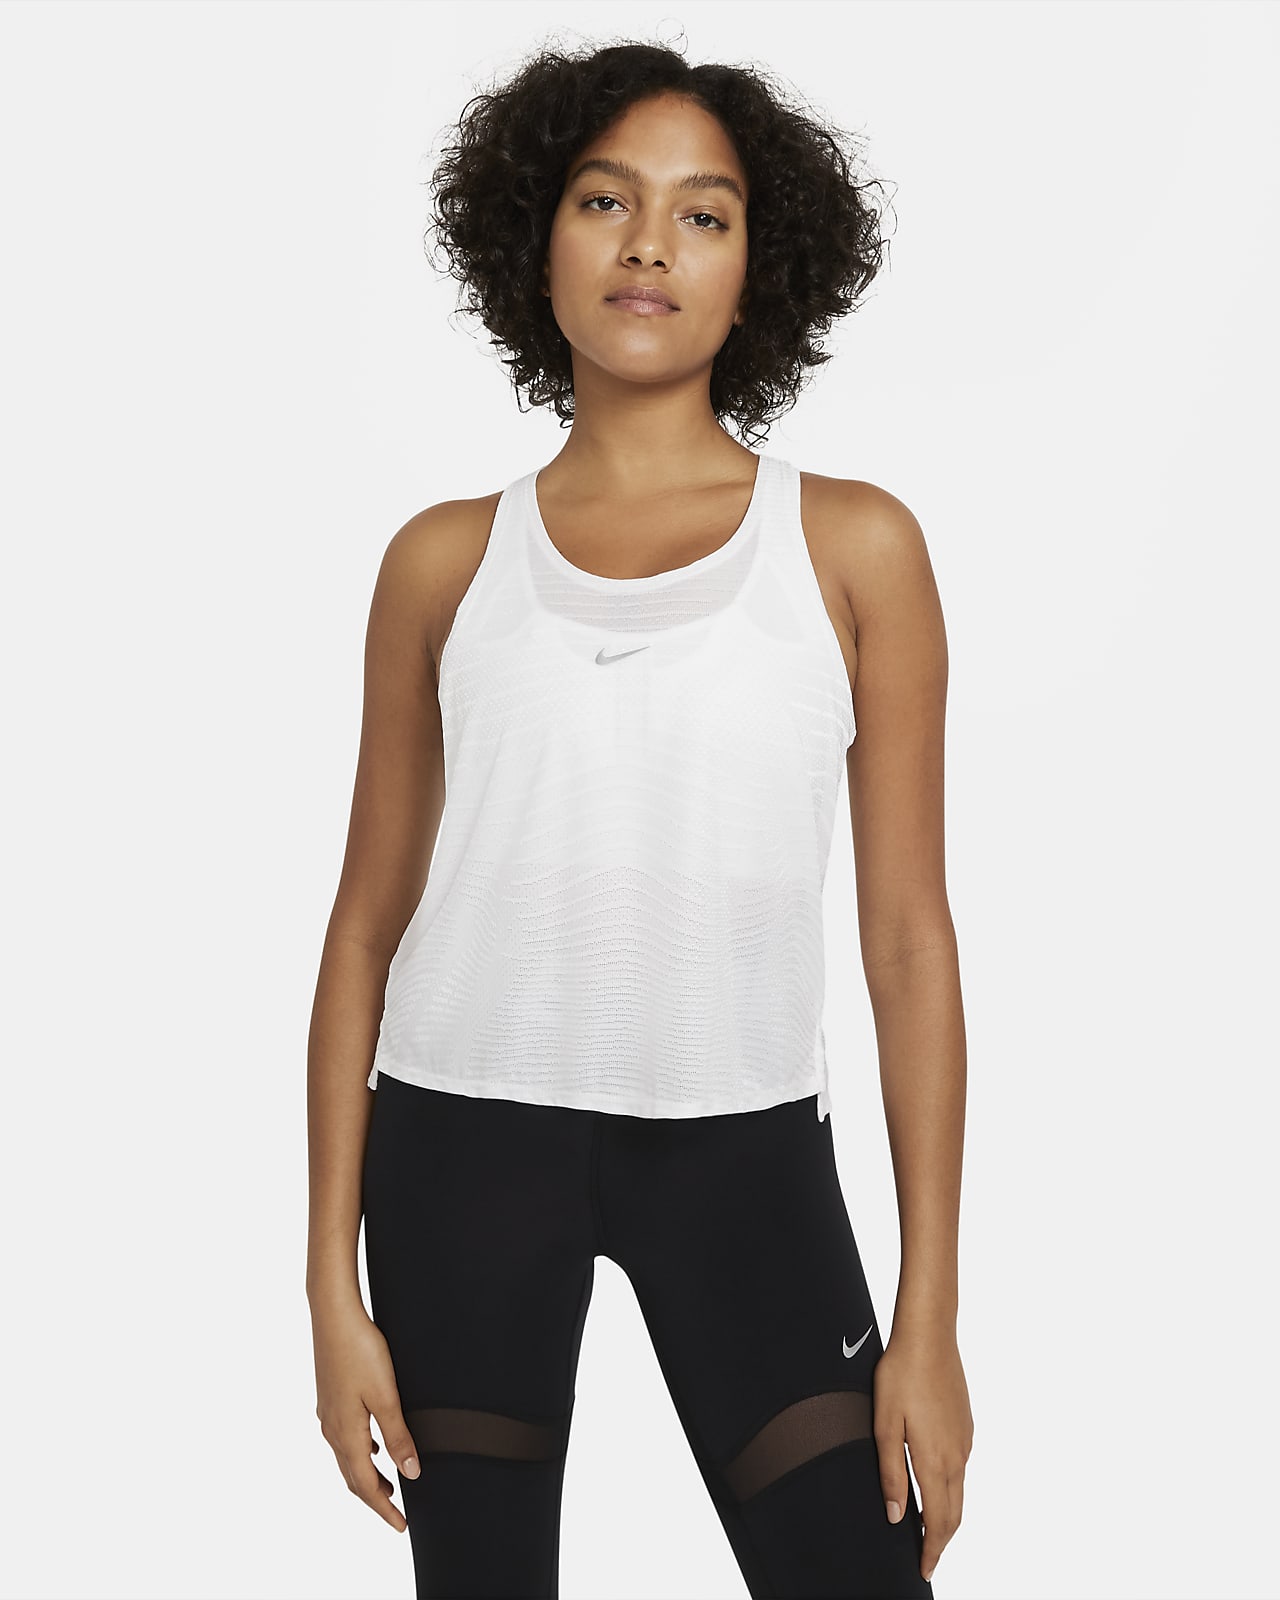 Camisetas sin mangas y de tirantes para mujer. Nike ES